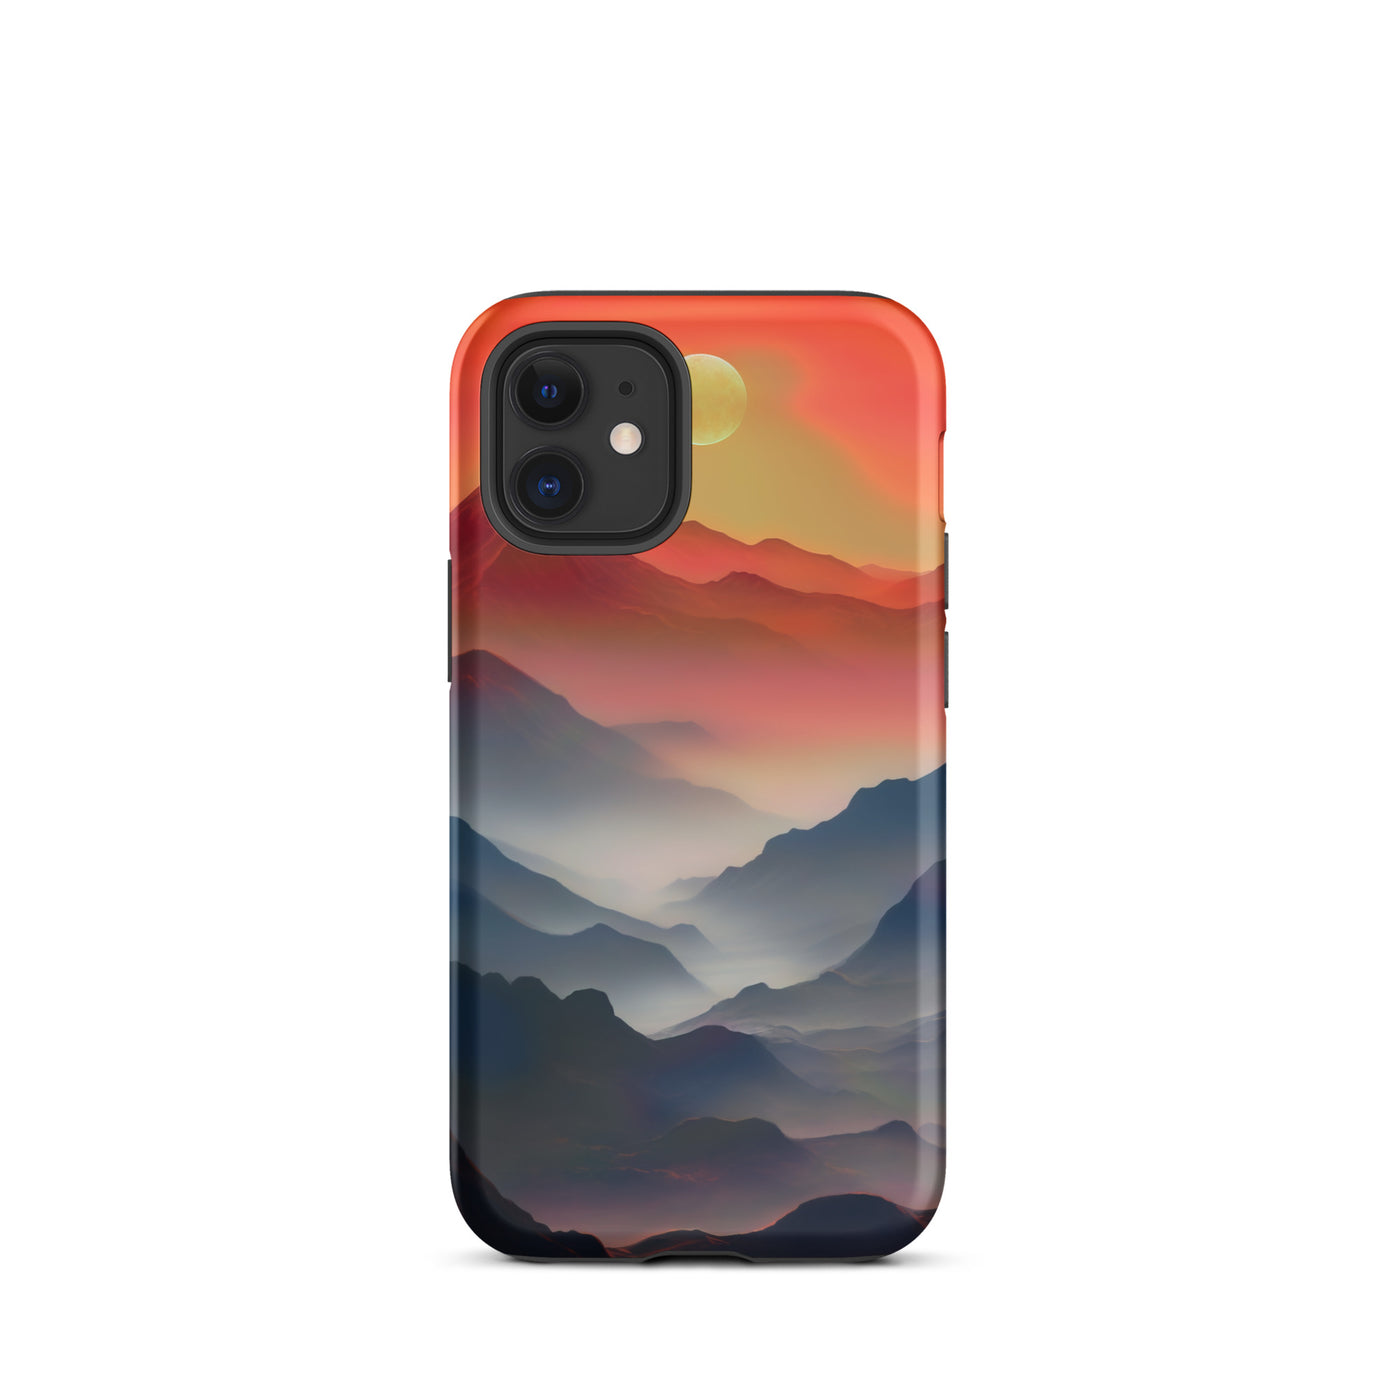 Sonnteruntergang, Gebirge und Nebel - Landschaftsmalerei - iPhone Schutzhülle (robust) berge xxx iPhone 12 mini